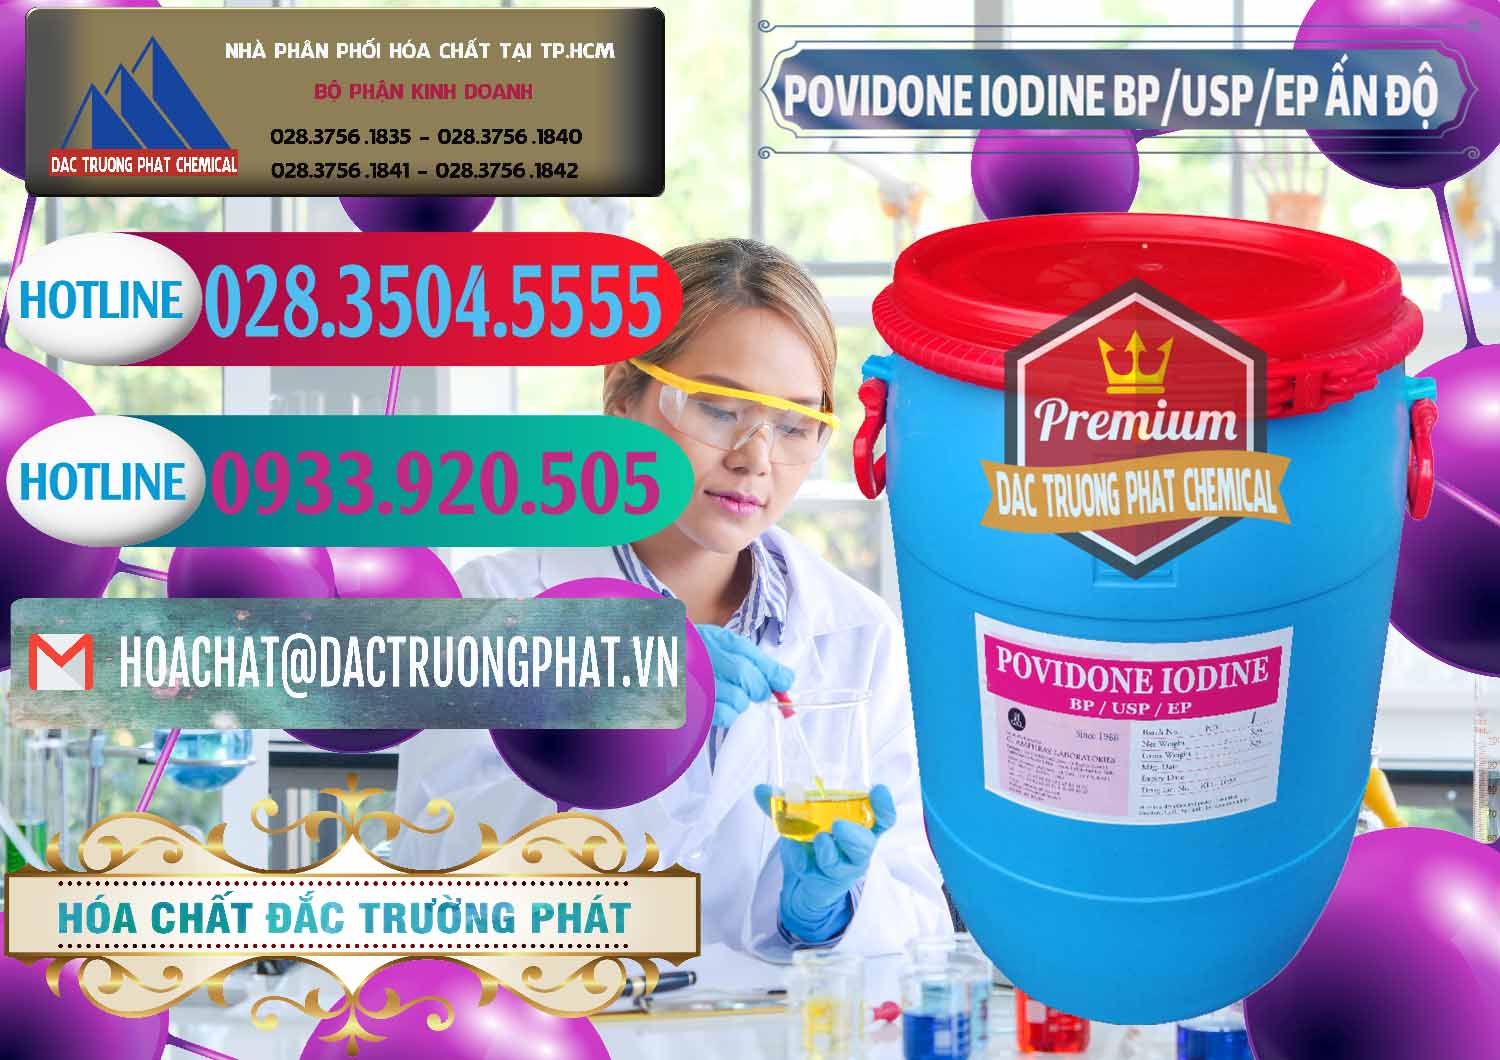 Nơi chuyên phân phối ( bán ) Povidone Iodine BP USP EP Ấn Độ India - 0318 - Công ty chuyên phân phối và cung ứng hóa chất tại TP.HCM - truongphat.vn